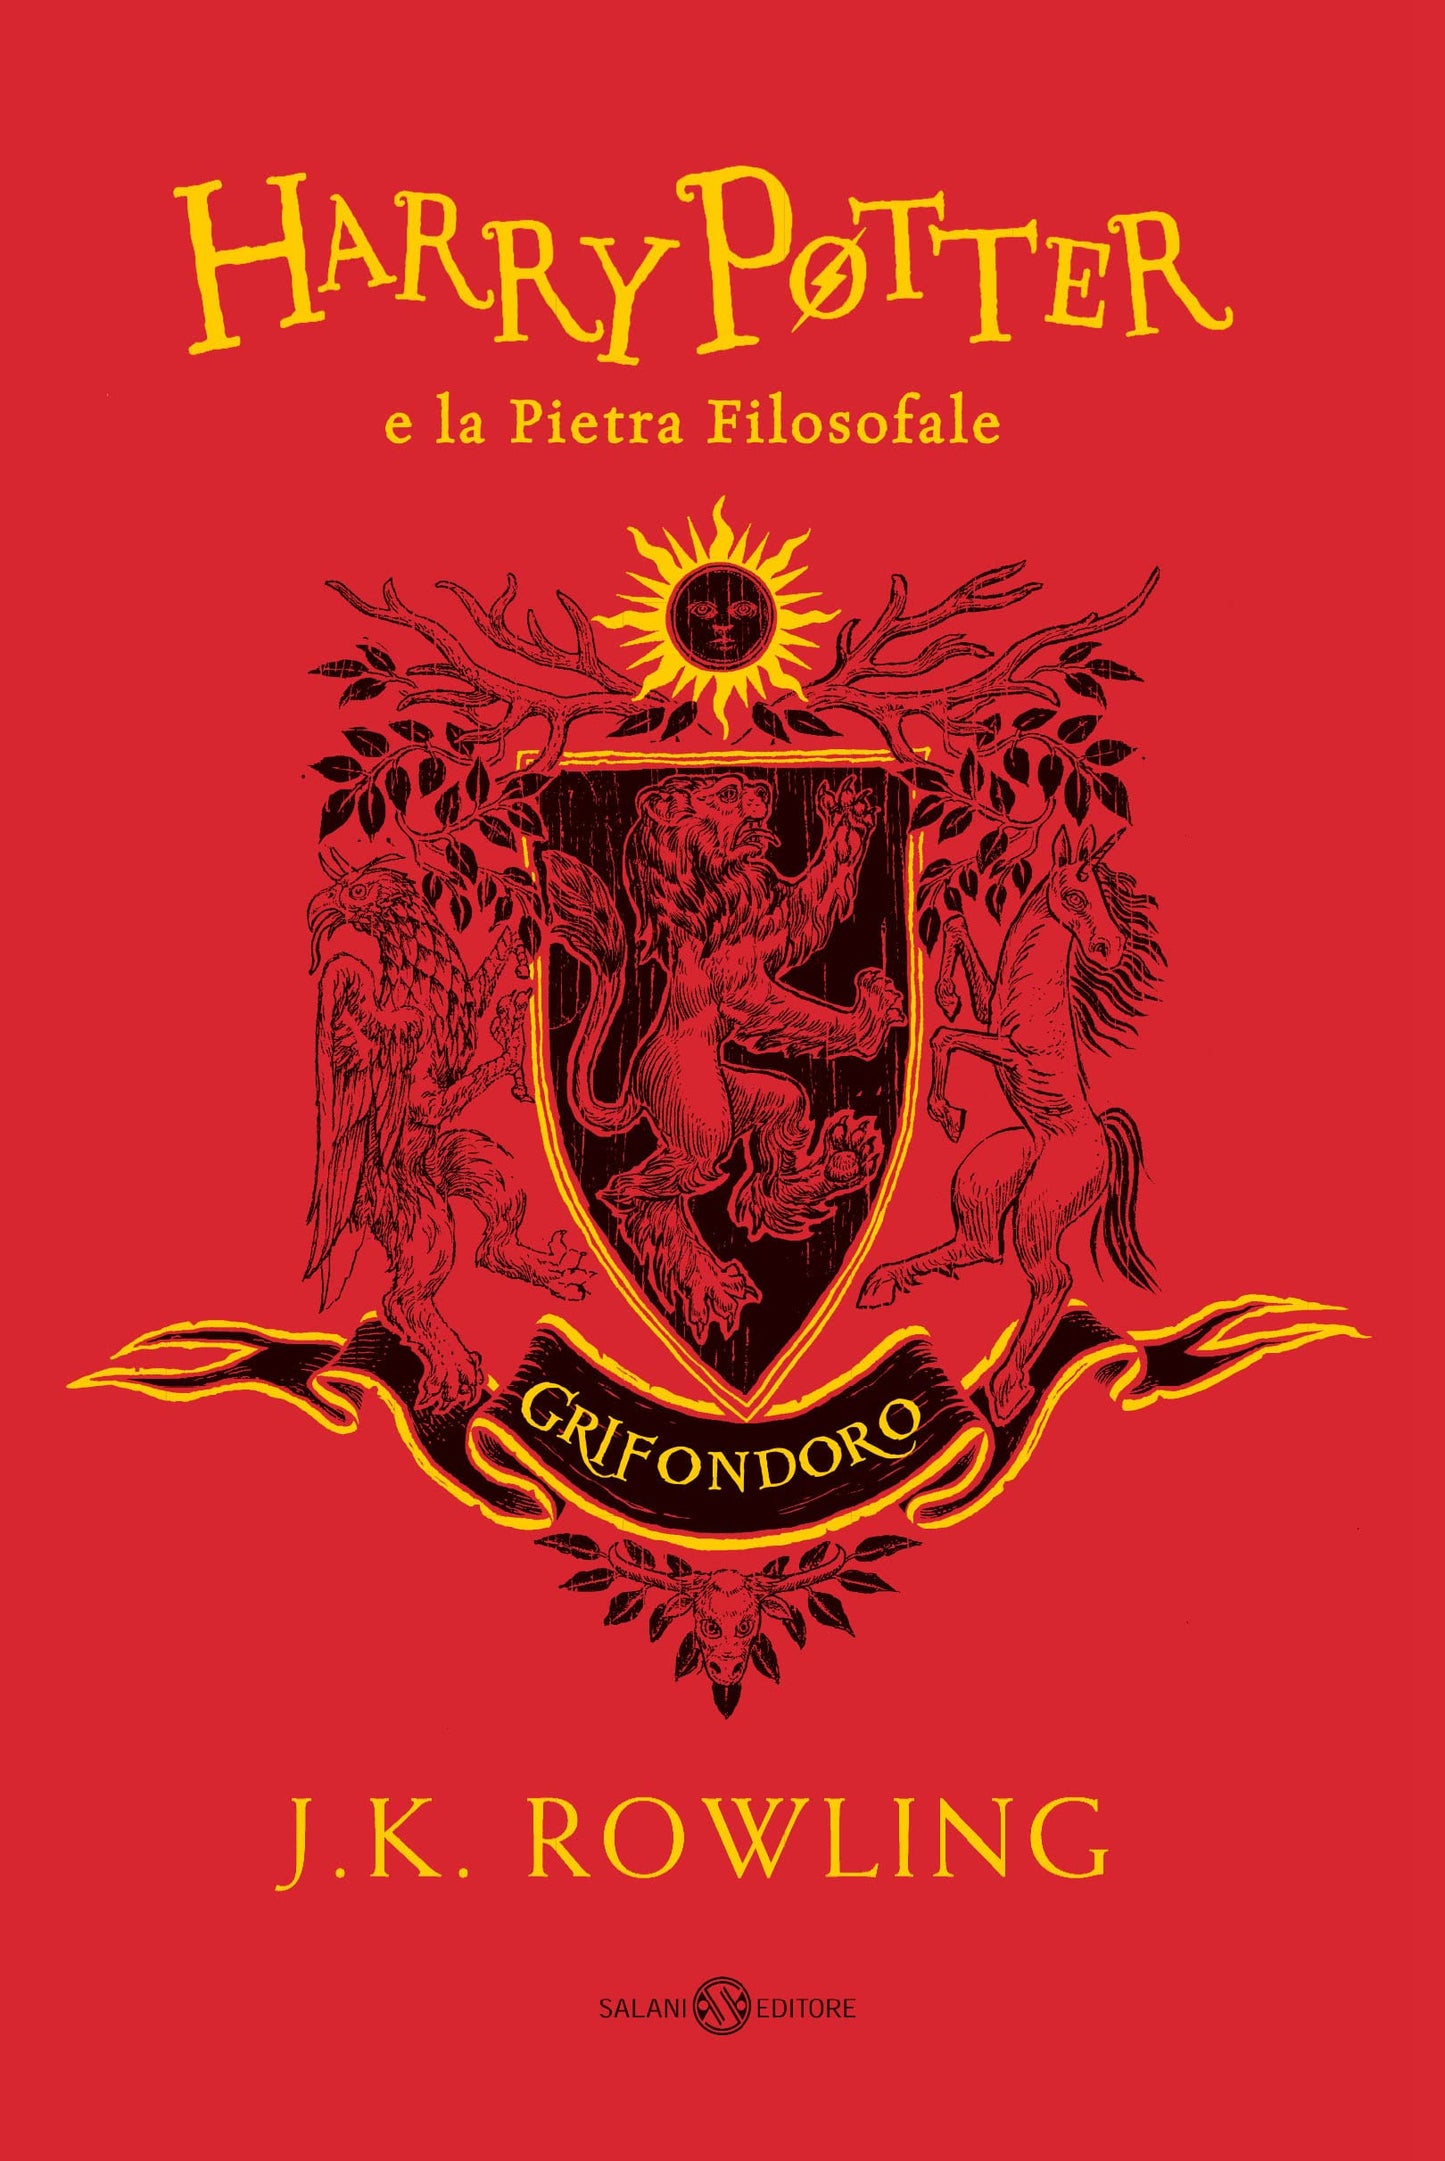 Harry Potter - edizione grifondoro - la serie completa - cofanetto